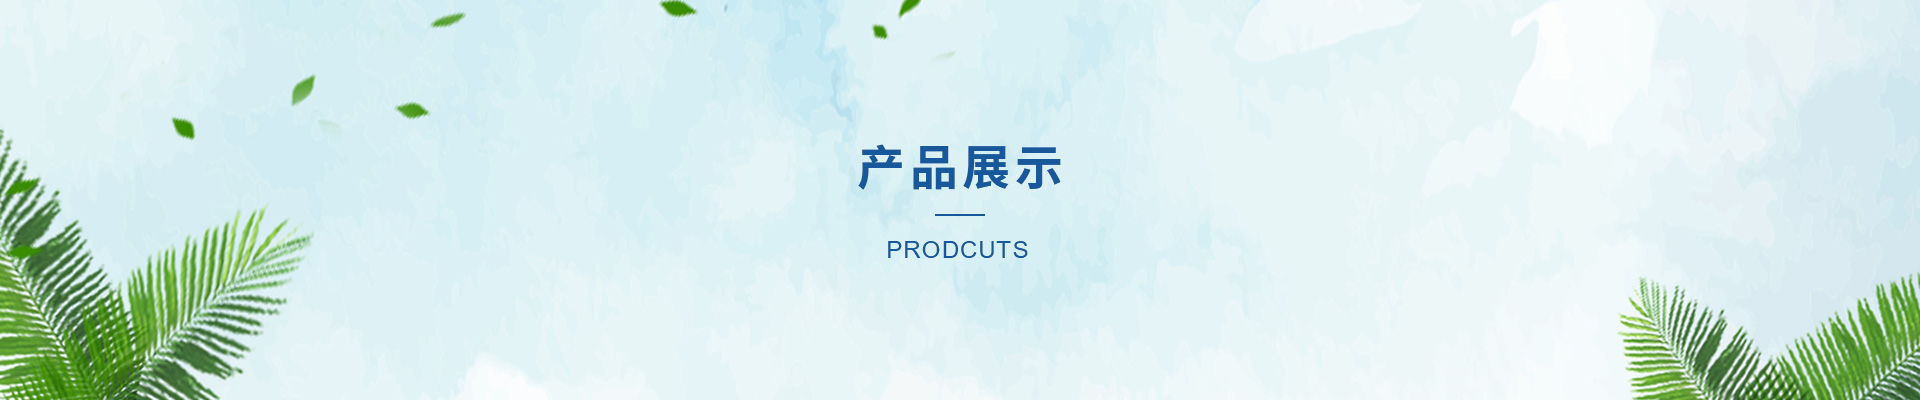 贝博app体育下载安装:茂名众和化塑重塑料袋出产线投产